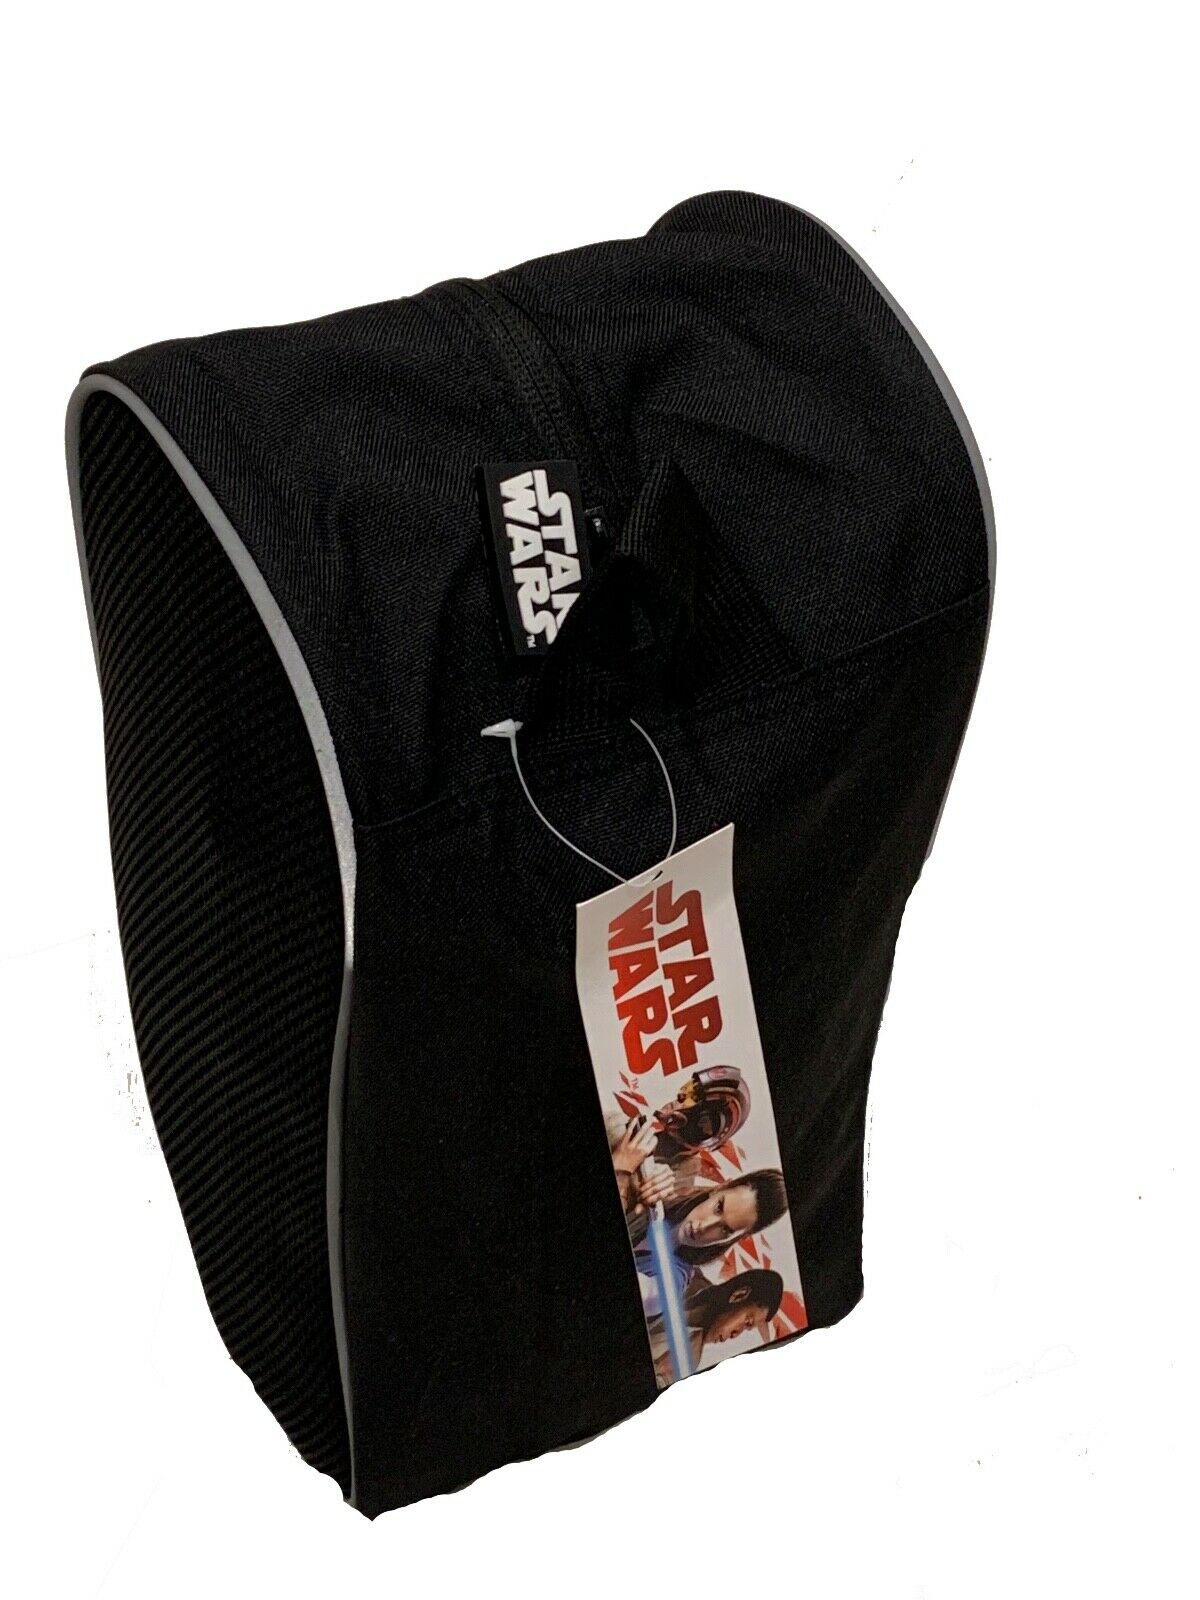 Disney Star Wars Black Gym Bag For Shoes Men's